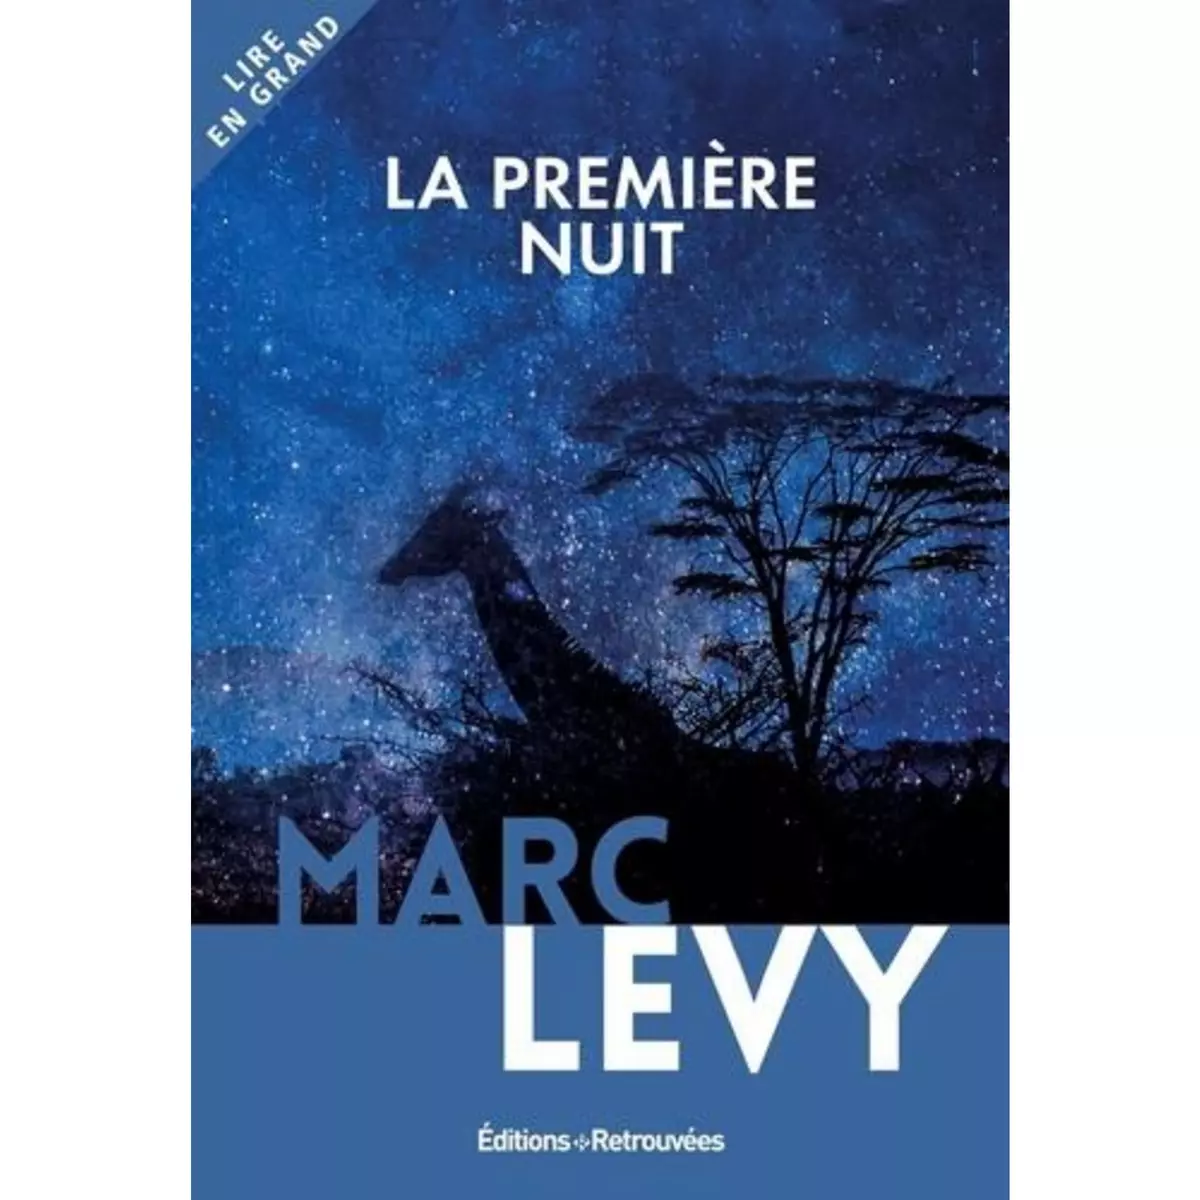  LA PREMIERE NUIT [EDITION EN GROS CARACTERES], Levy Marc